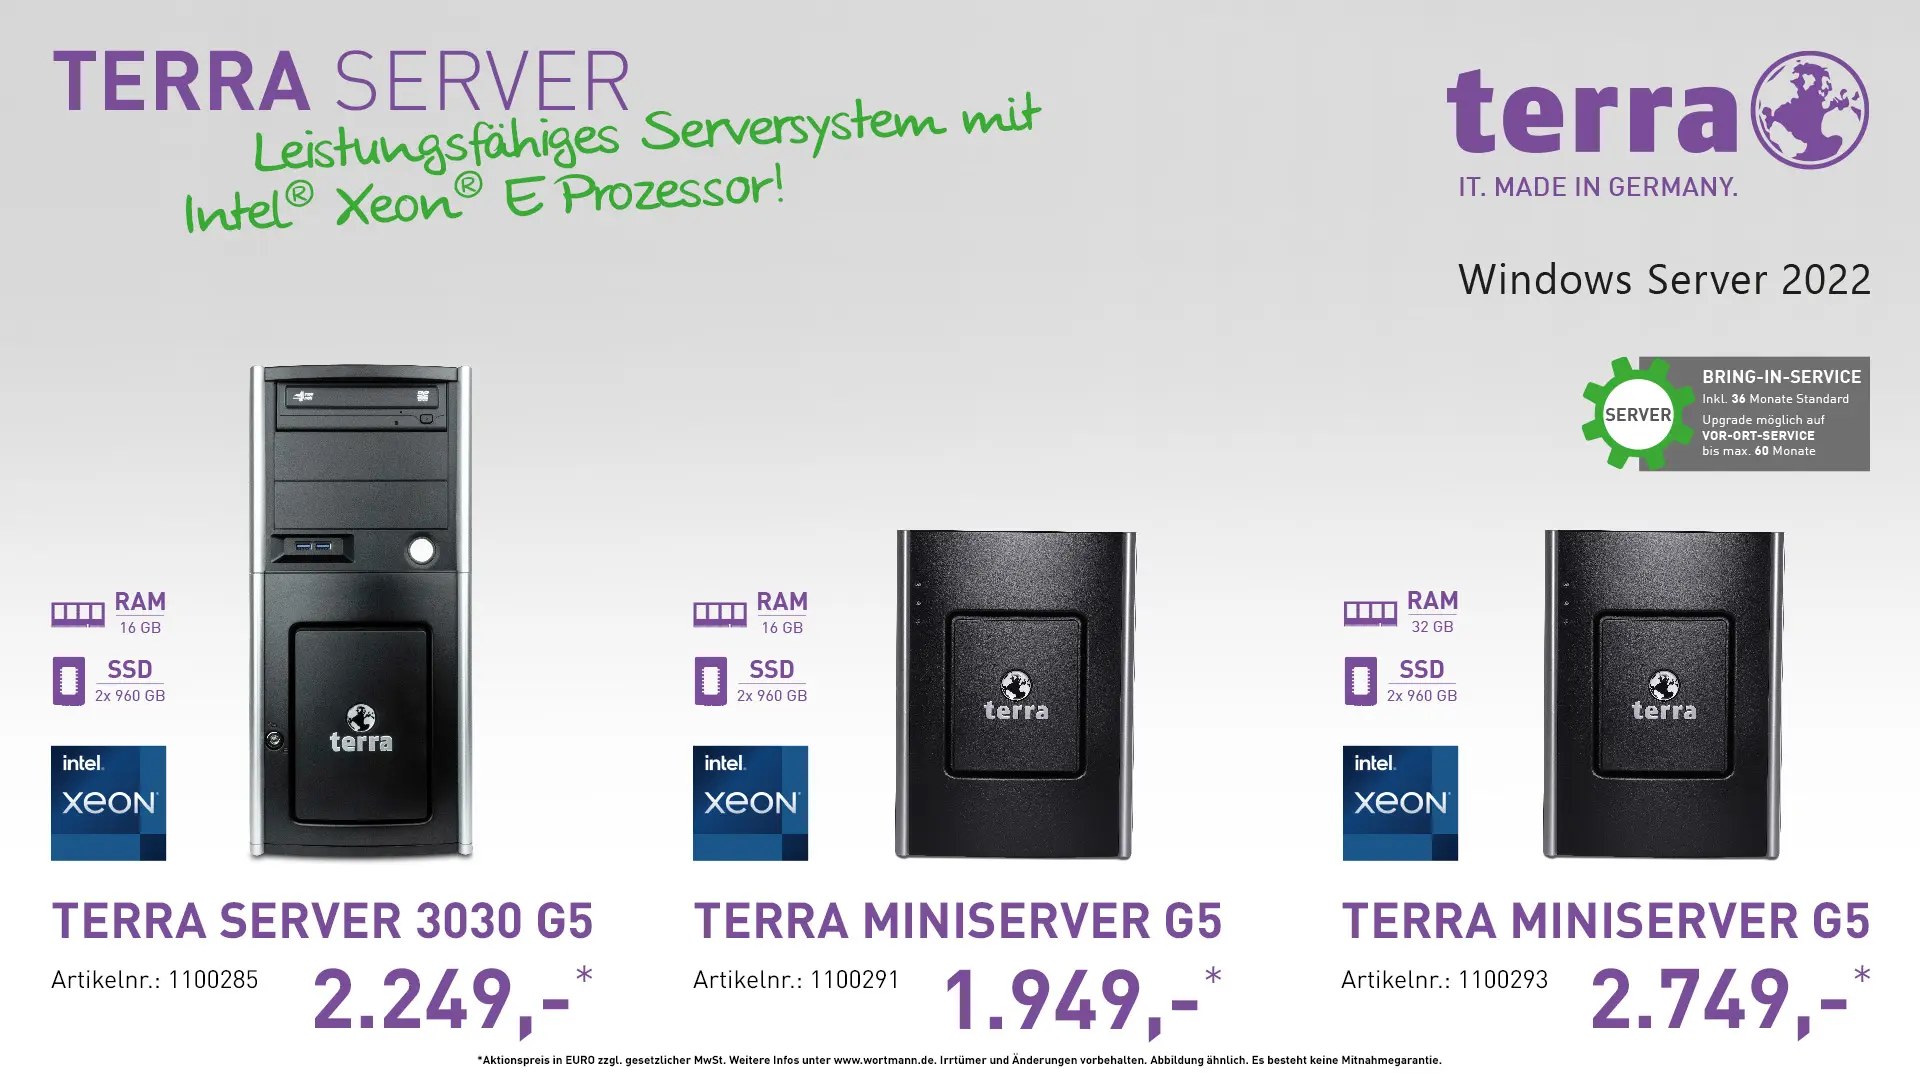 Terra Server 3030 G5, Terra Miniserver G5